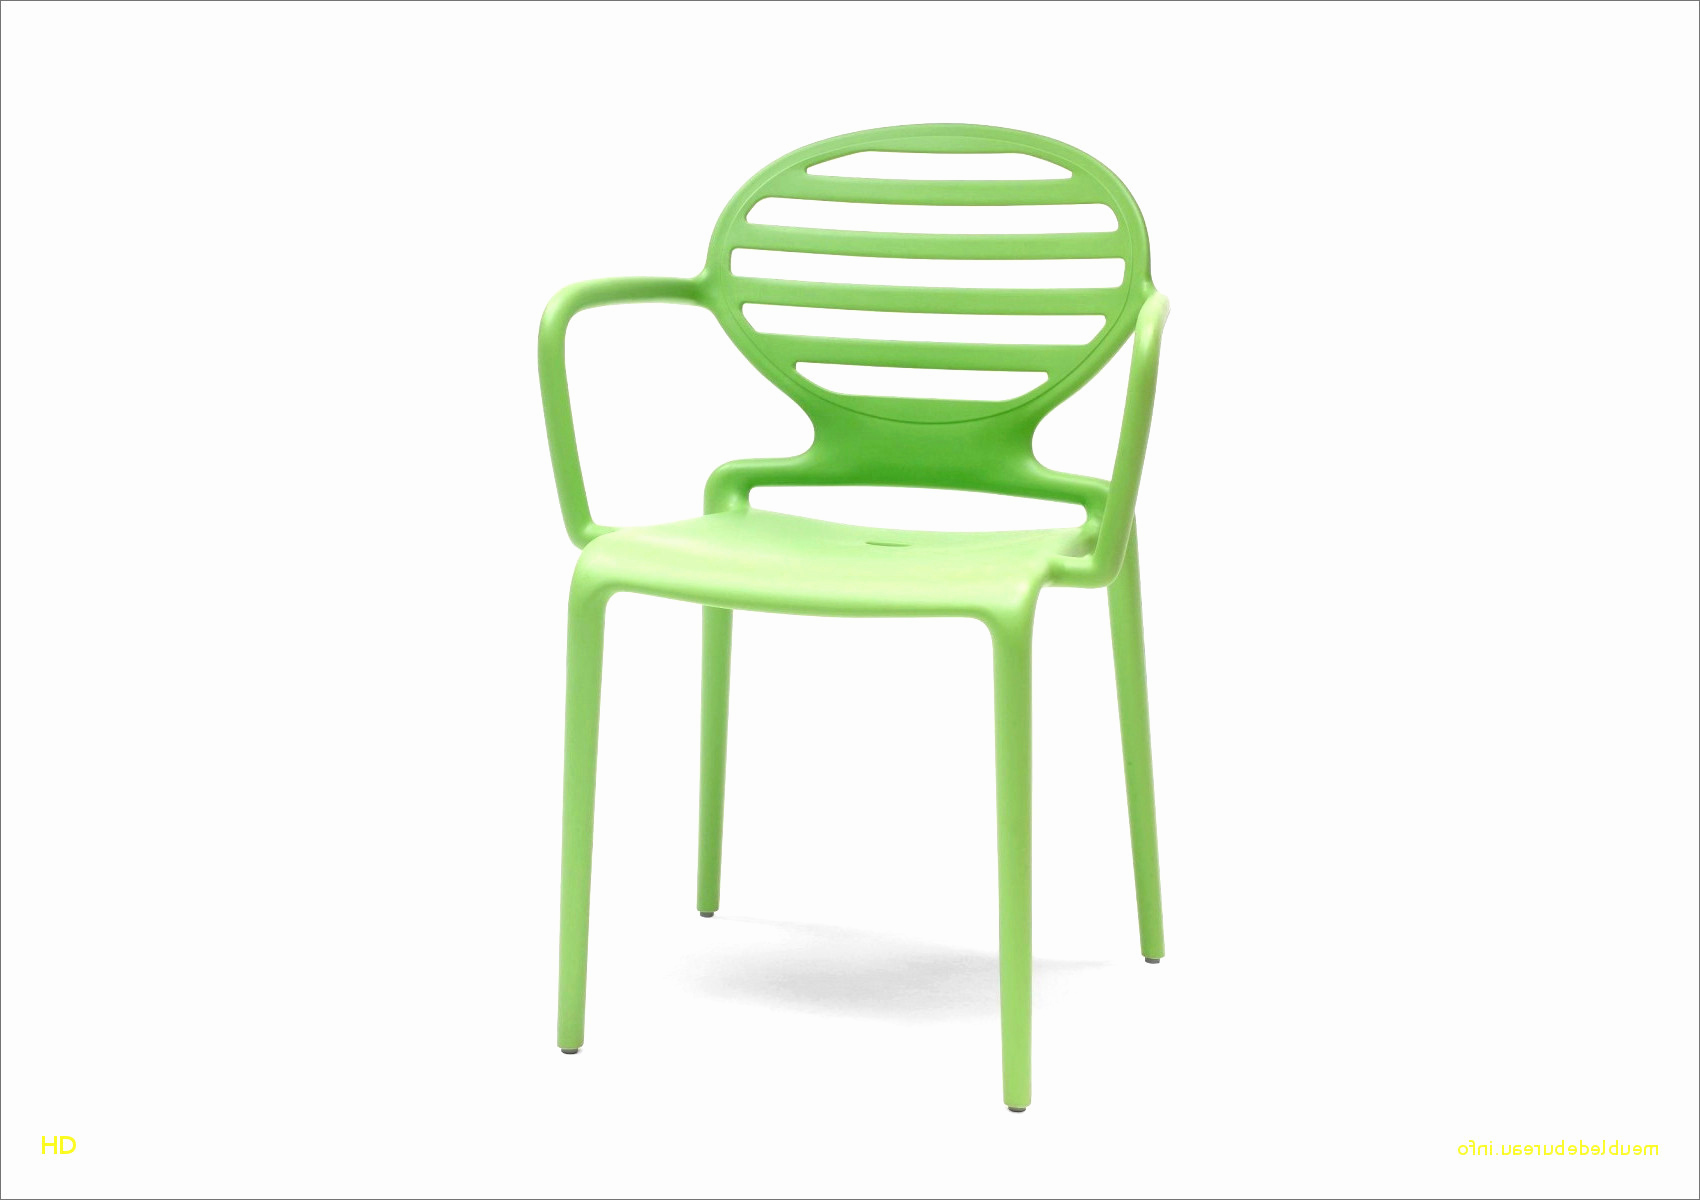 regulier collection de chaises pas cheres unique bois pas cher luxe resultat superieur chaise blanche et bois pas of regulier collection de chaises pas cheres